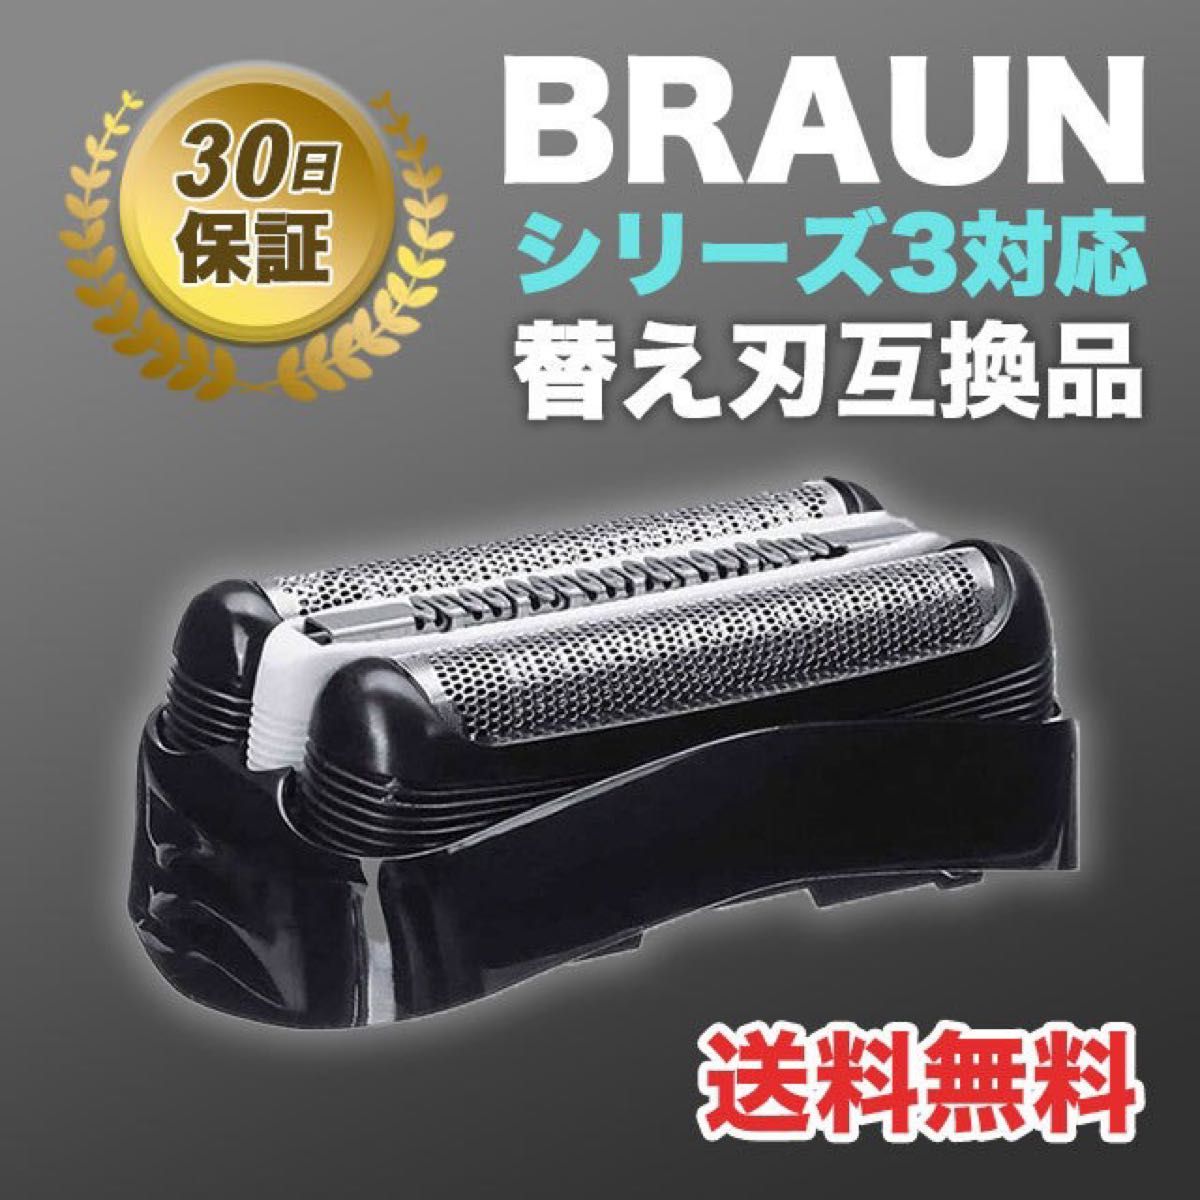 ブラウン BRAUN 替刃 互換品 シリーズ３/32B 網刃 一体型 シェーバー